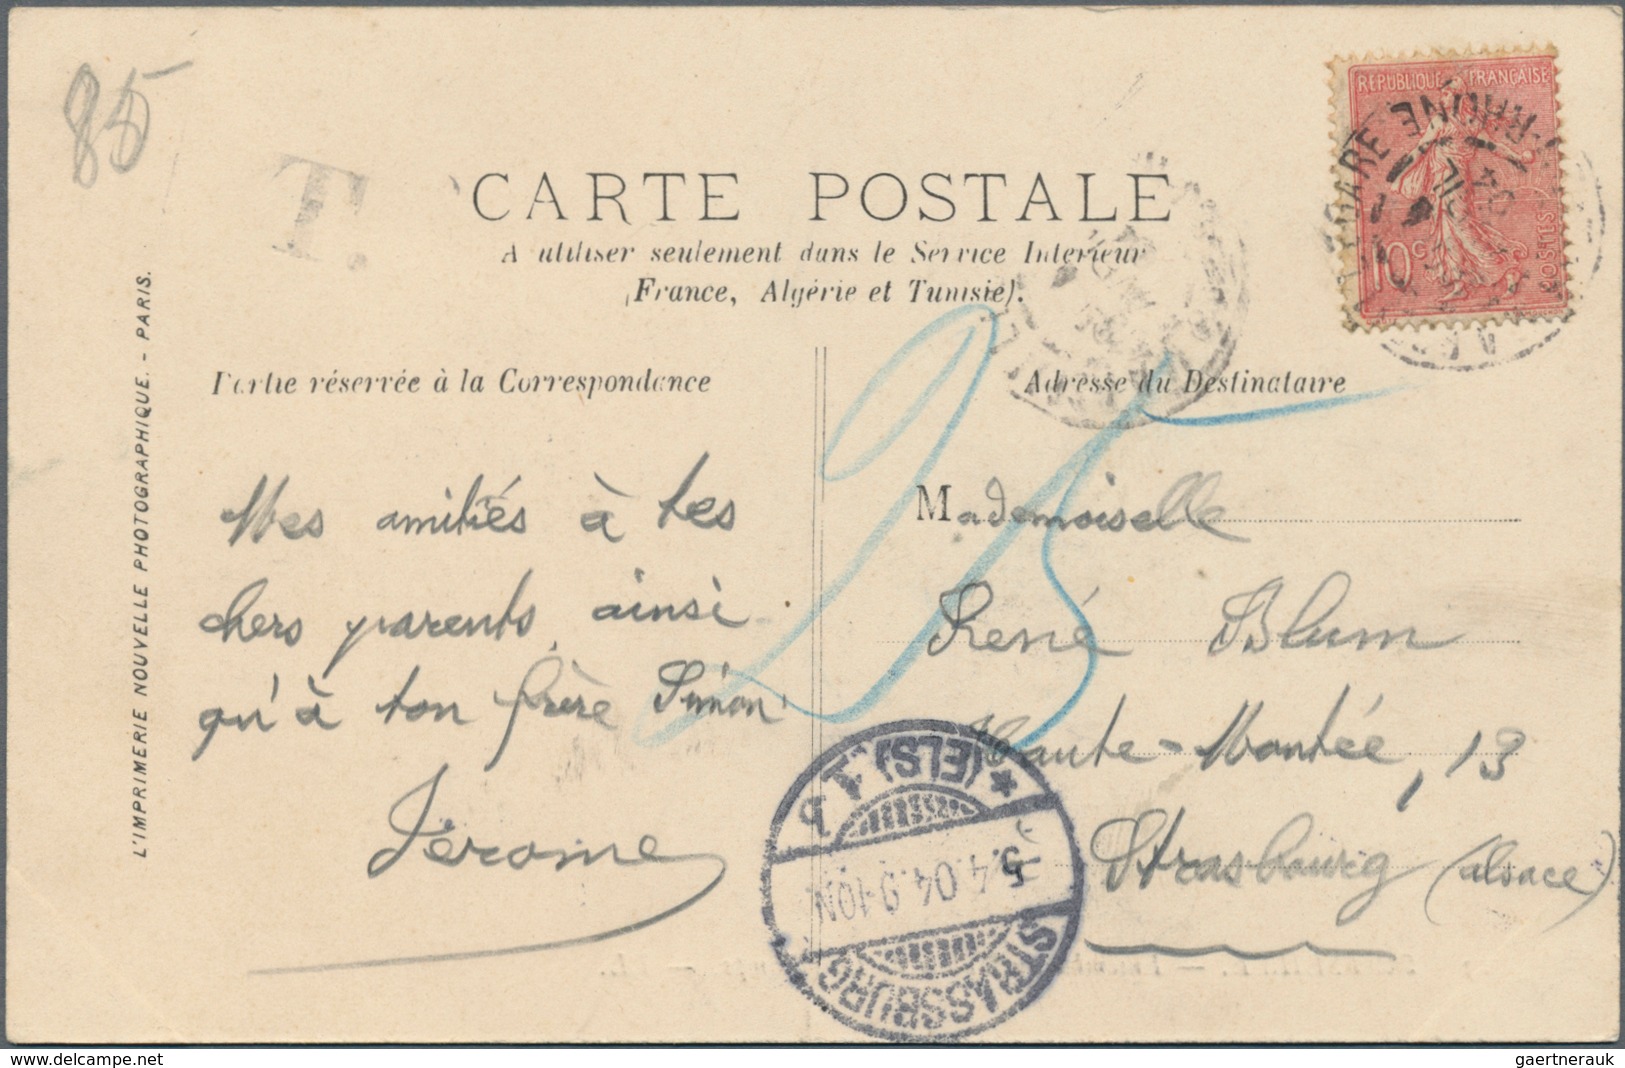 Frankreich: 1898/1900 (ca.), über 100 gelaufene Frankreich Postkarten mit einigen "Souvenir de...",